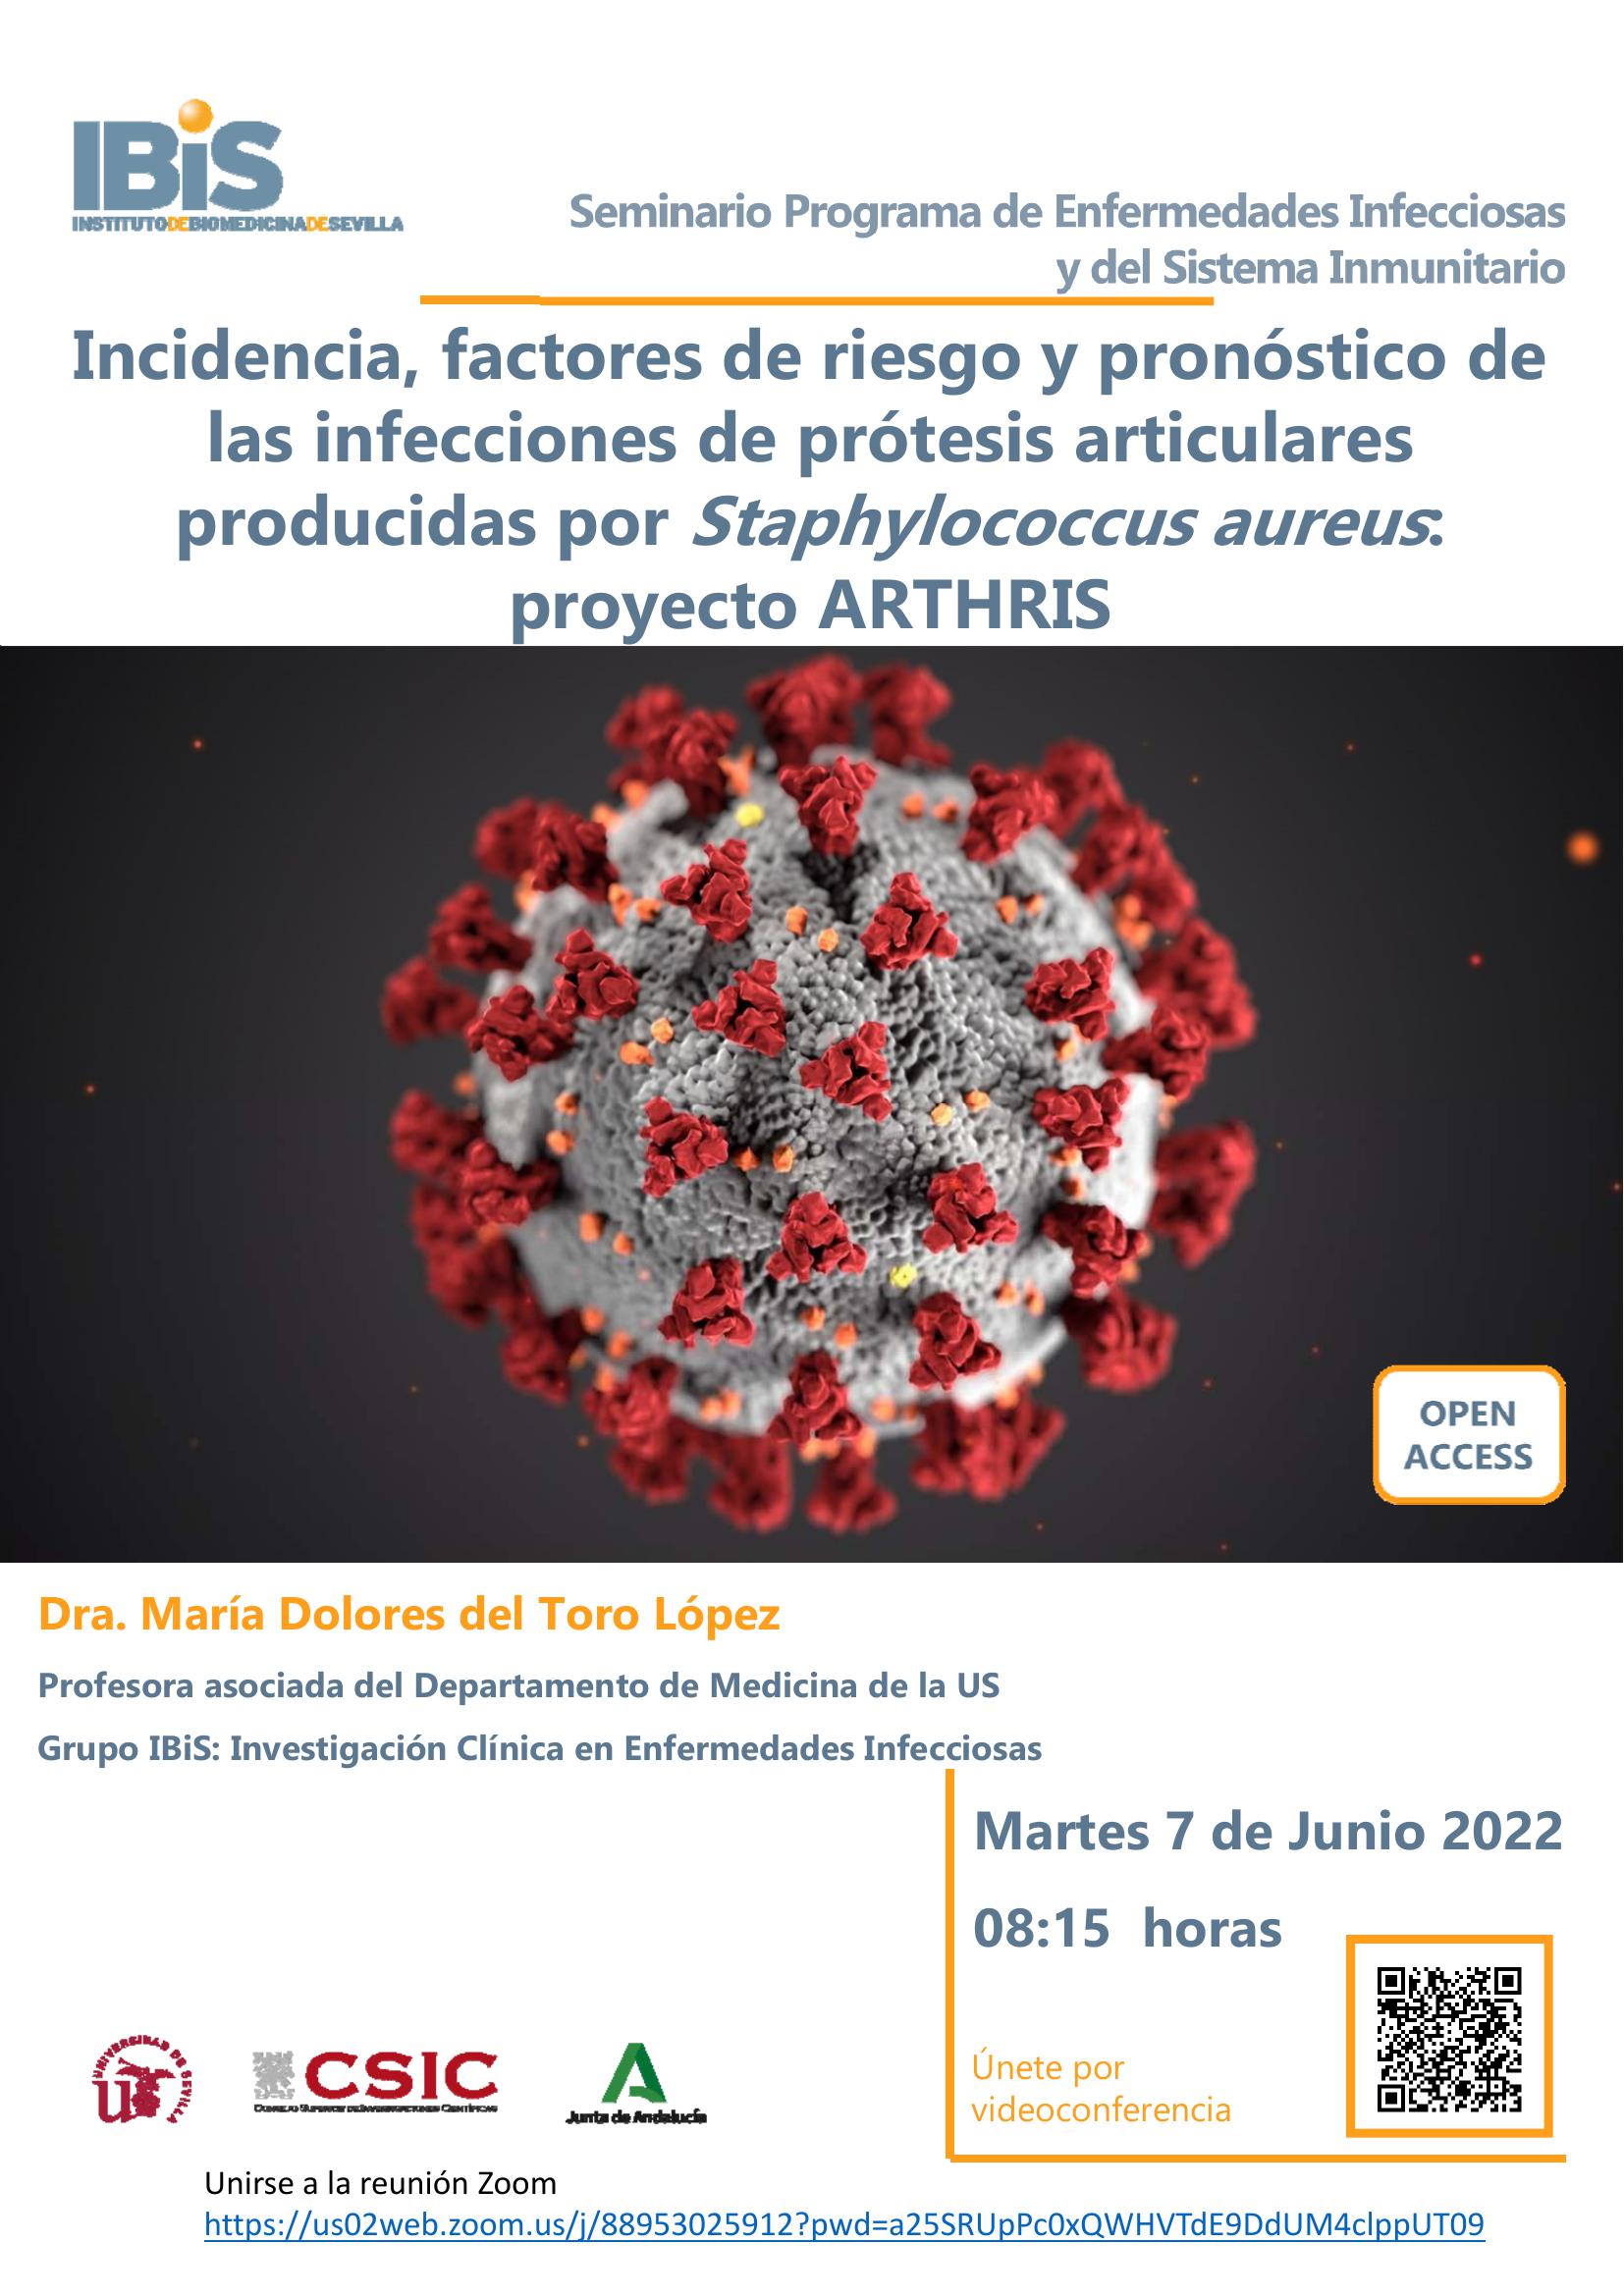 Poster: Incidencia, factores de riesgo y pronóstico de las infecciones de prótesis articulares producidas por Staphylococcus aureus: proyecto ARTHRIS